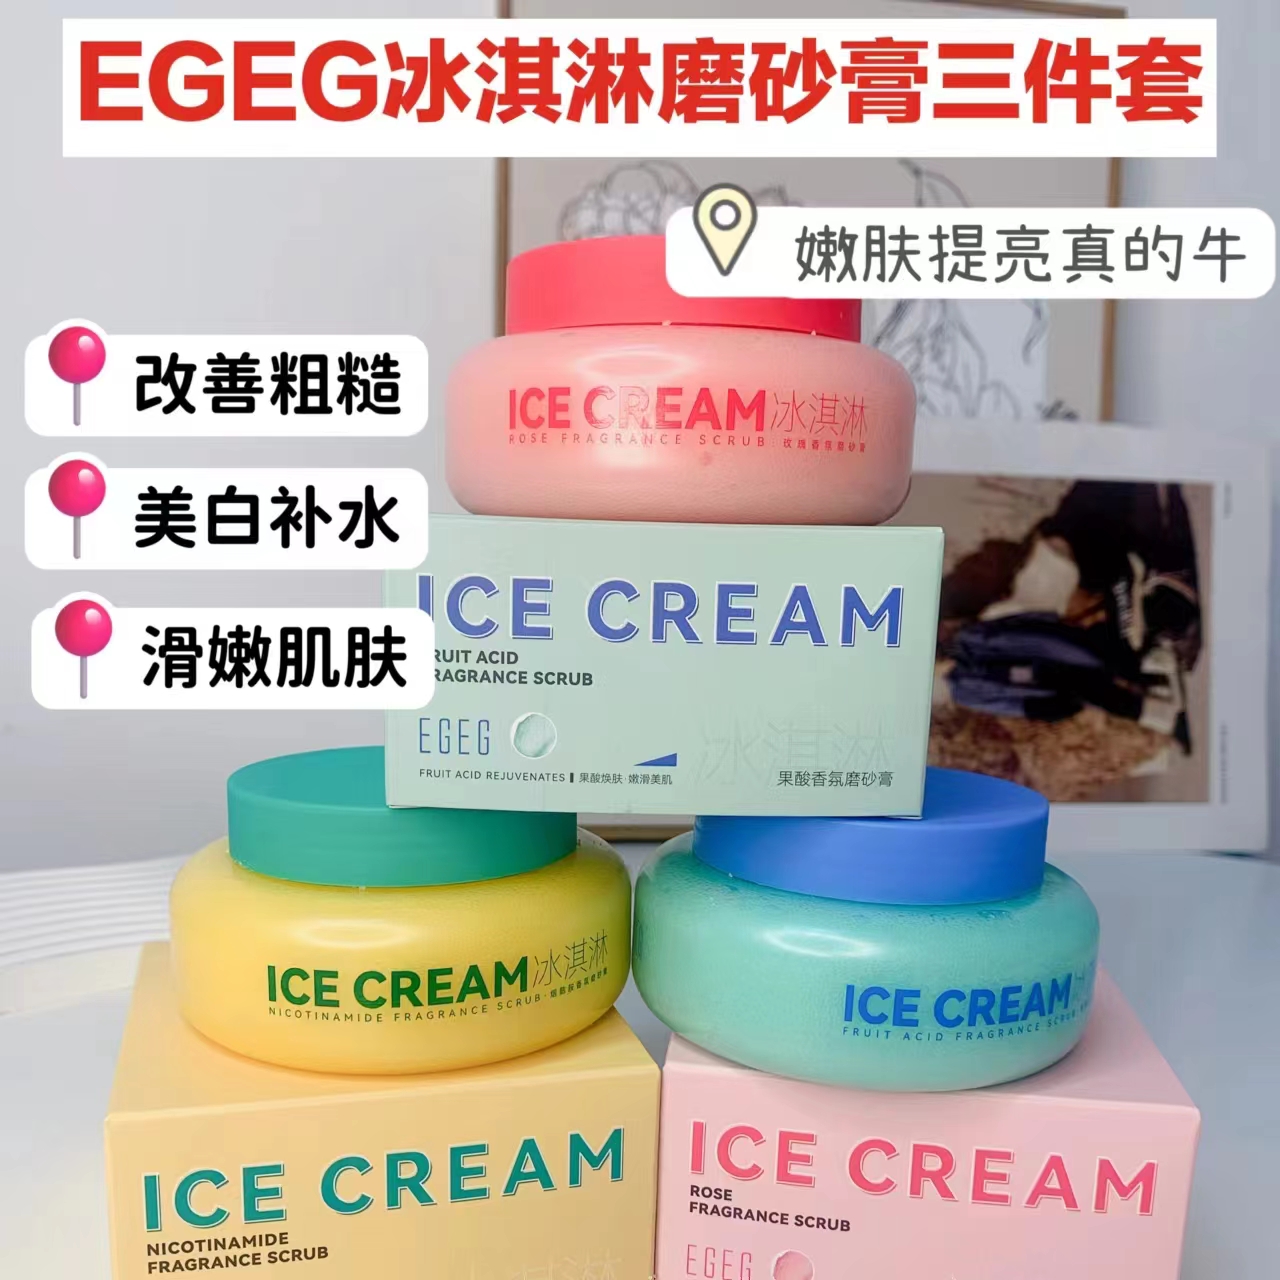 EGEG冰淇淋磨砂膏三件套#